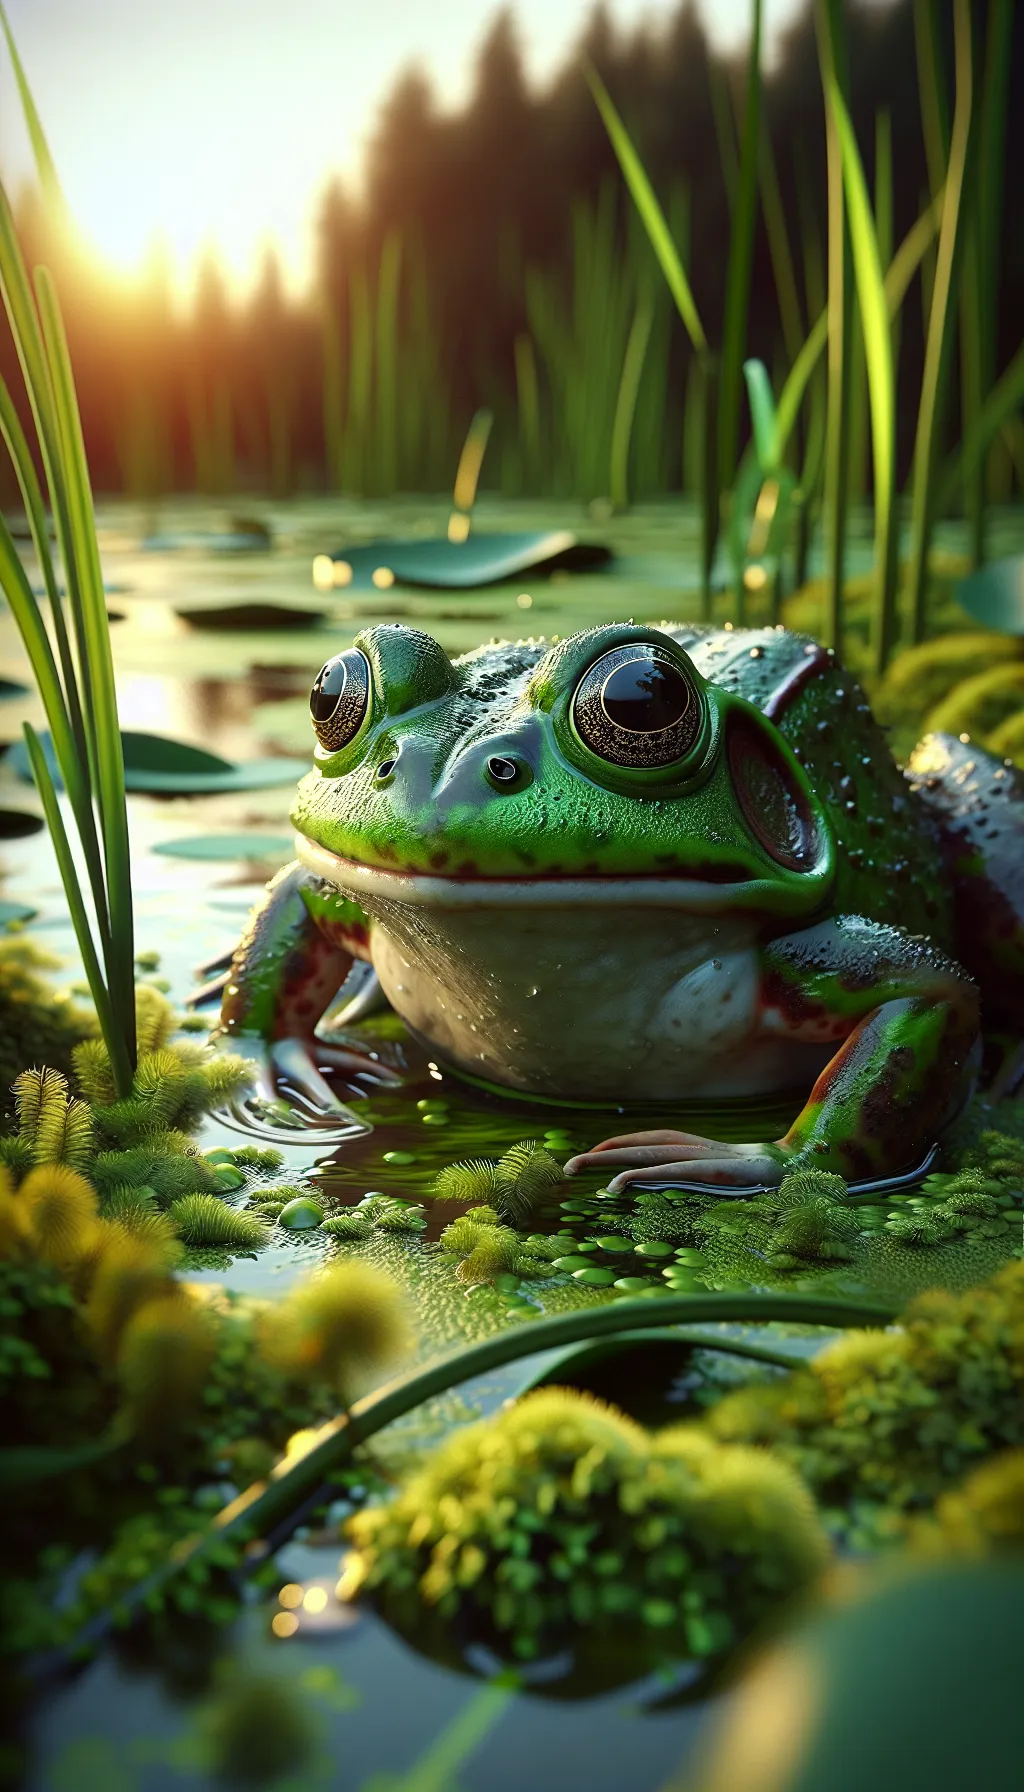 American Bullfrog - Animal Matchup